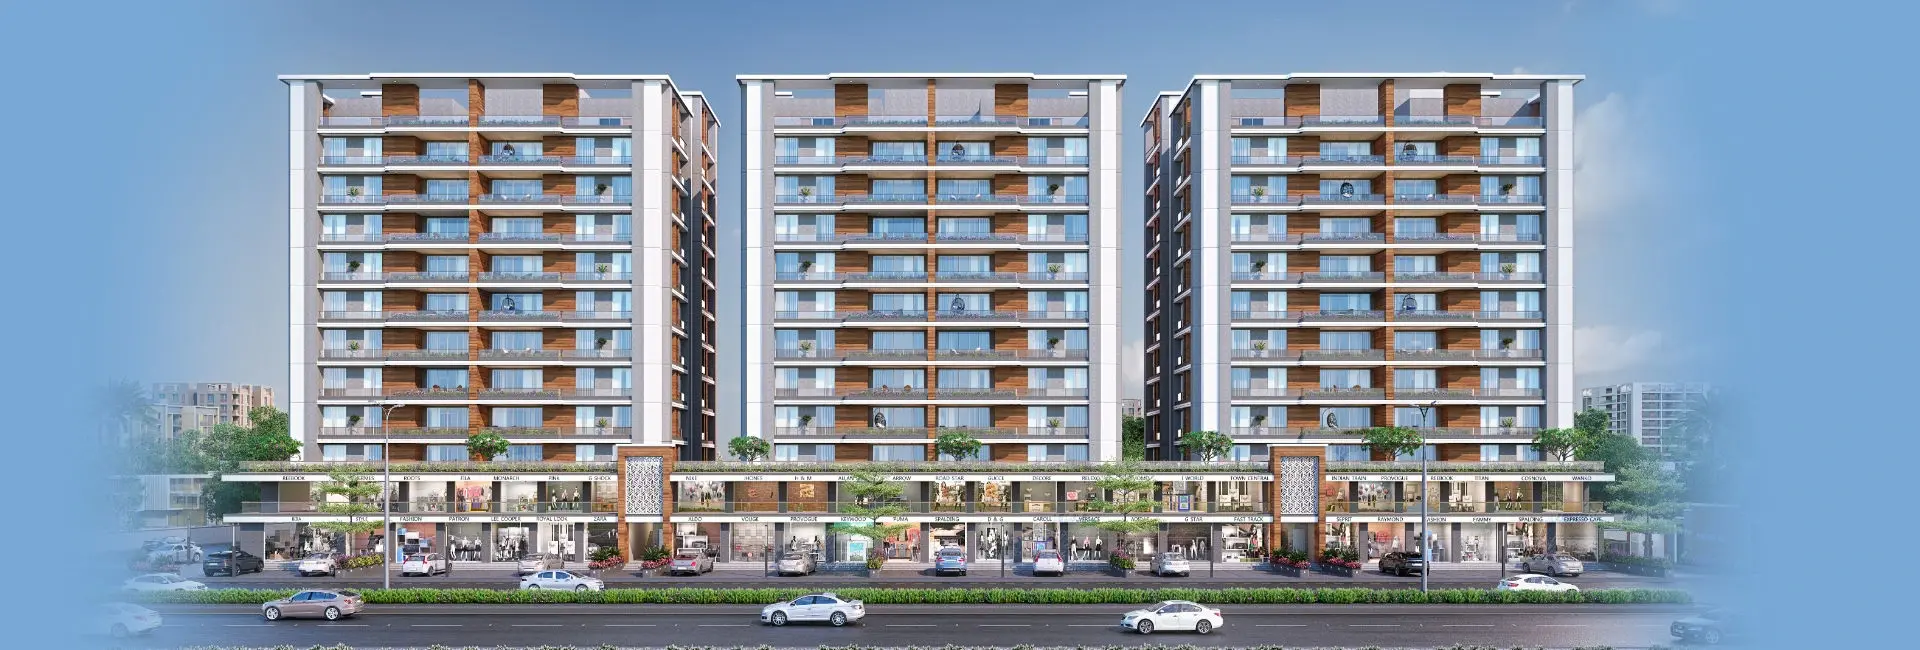 3 & 4b2hk flats in harni Vadodara - Shree Siddheshwar Hazelwood